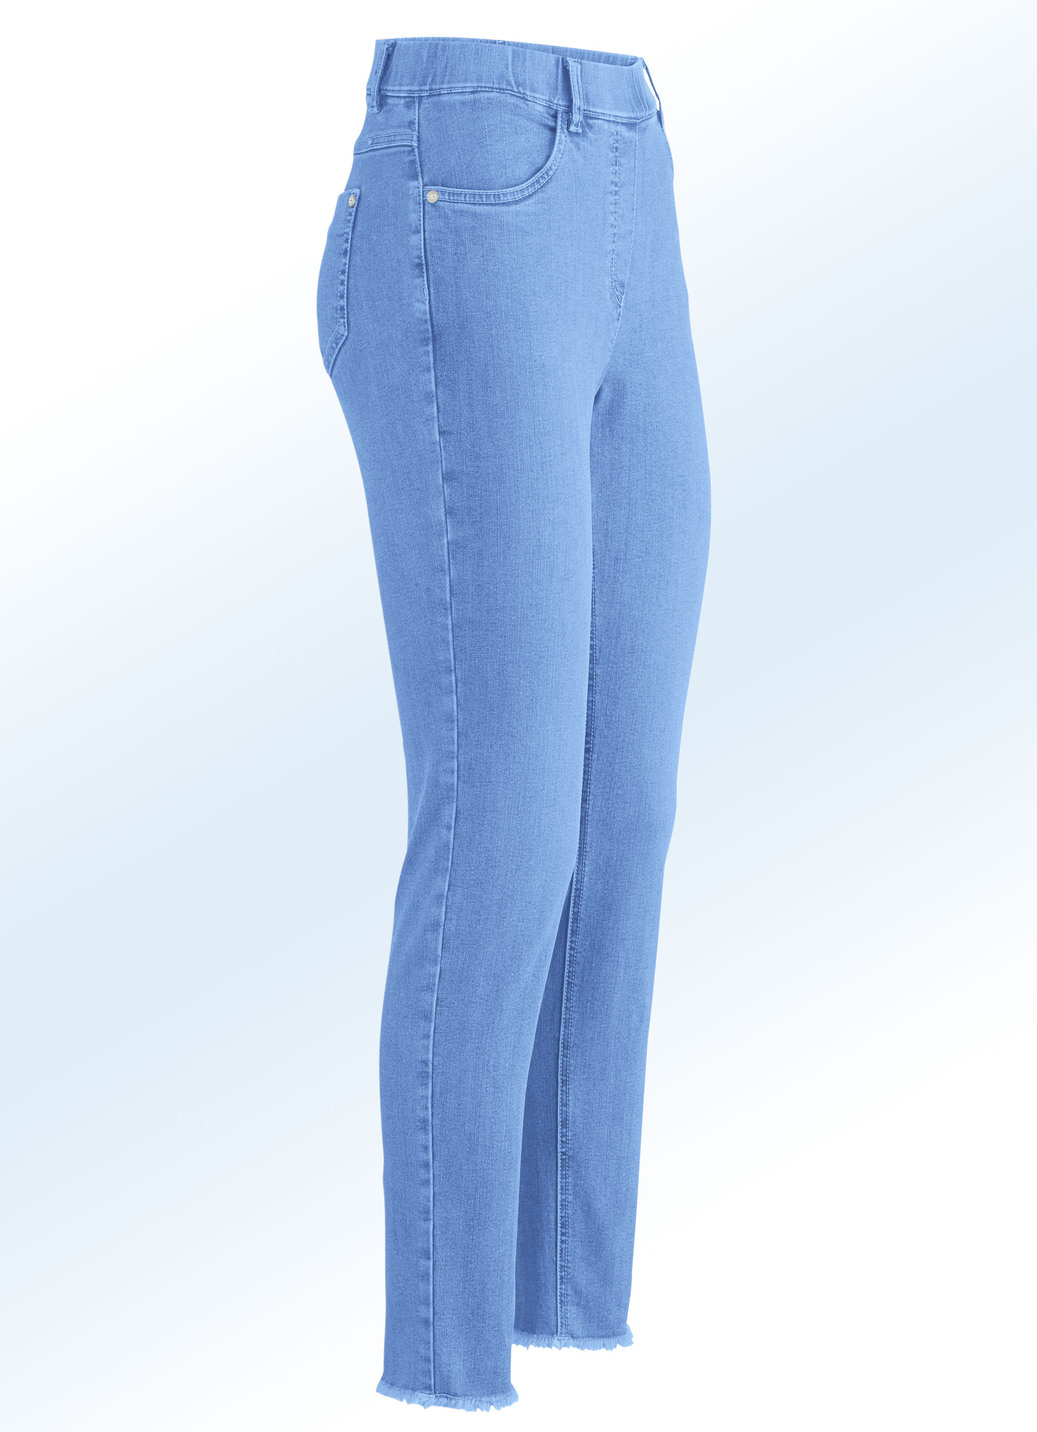 Magic-Jeans mit angesagtem Fransensaum, Azurblau, Größe 44 von ASCARI